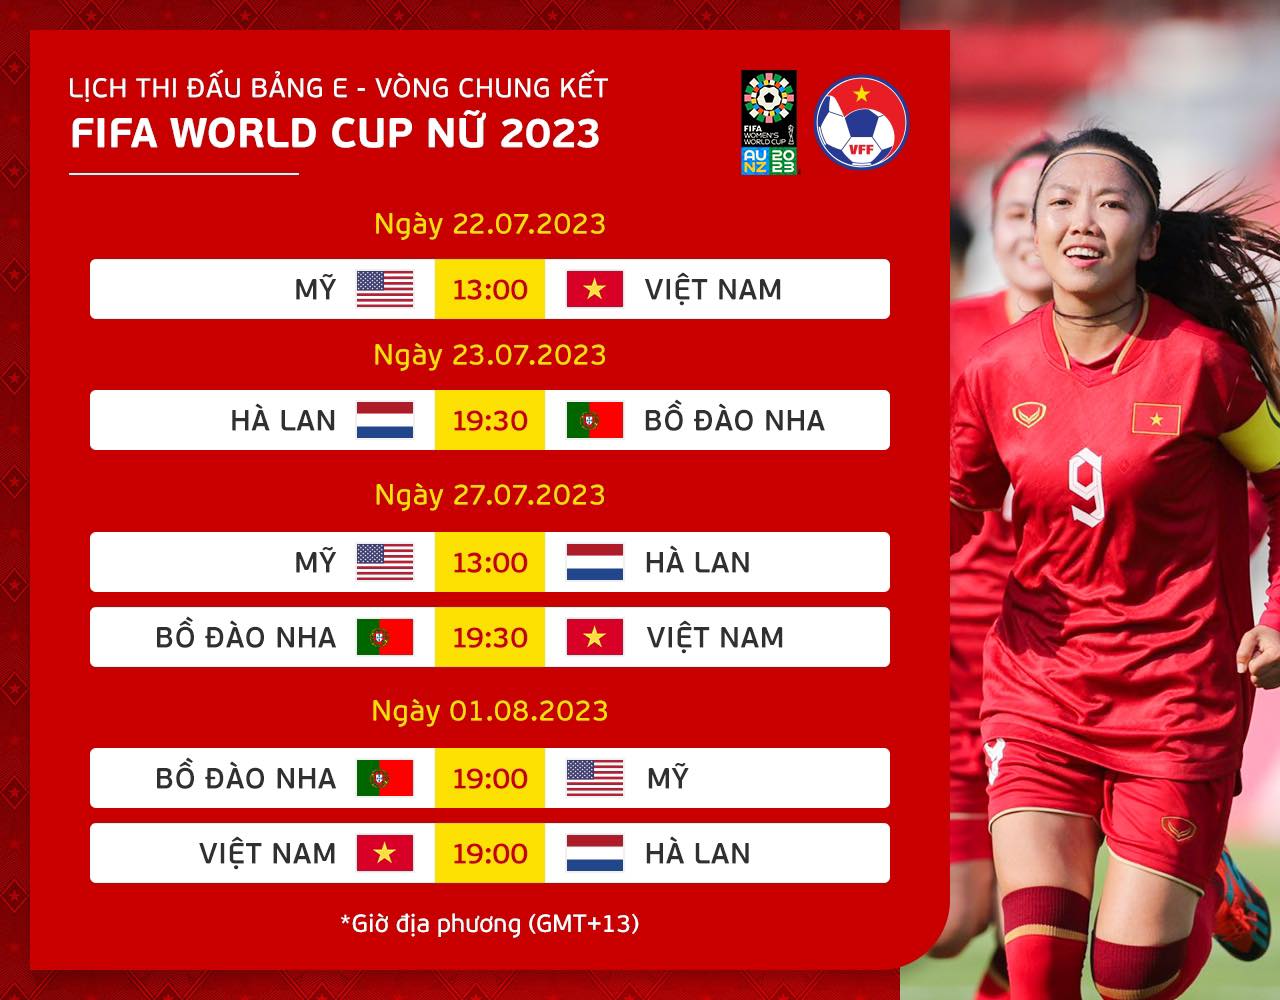 Lịch thi đấu đội tuyển nữ Việt Nam tại World Cup 2023 keobonghaiminh.com